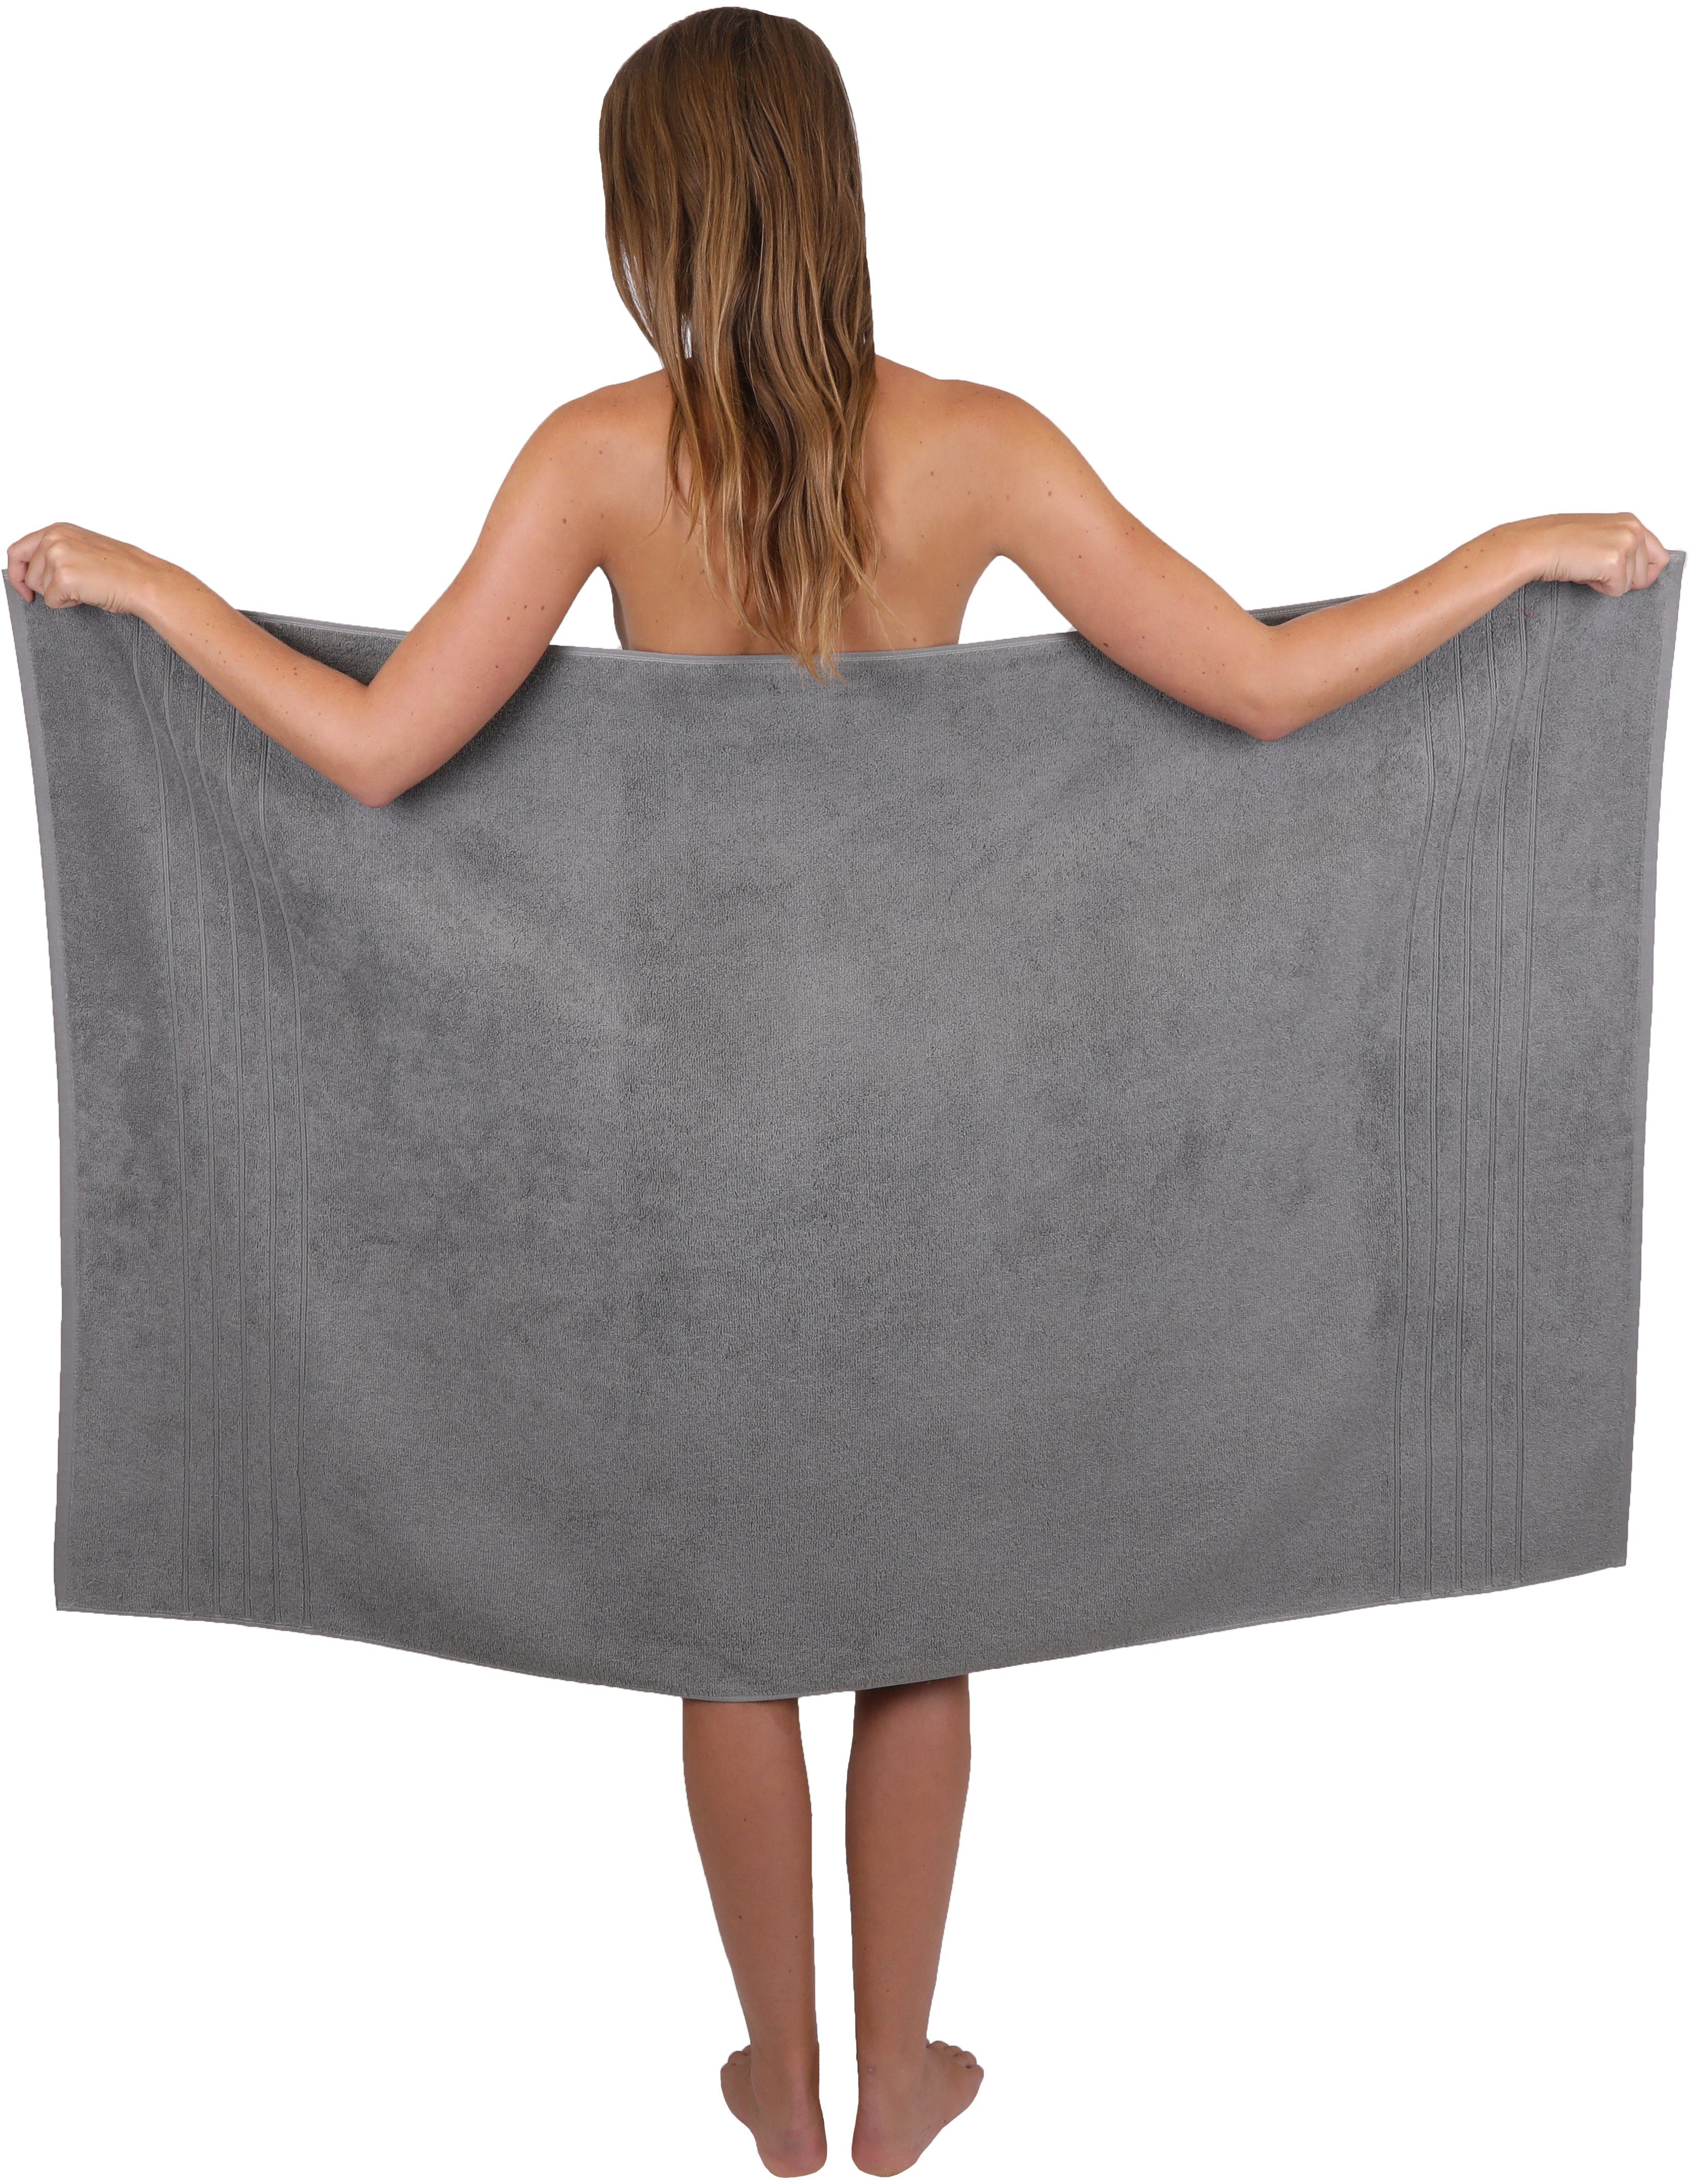 Handtuch 4-TLG. Deluxe anthrazit Betz Set Baumwolle grau, Farbe 1 (4-tlg) 1 Handtuch 100% 1 1 100% Seiftuch Baumwolle, Badetuch Handtuch-Set Duschtuch